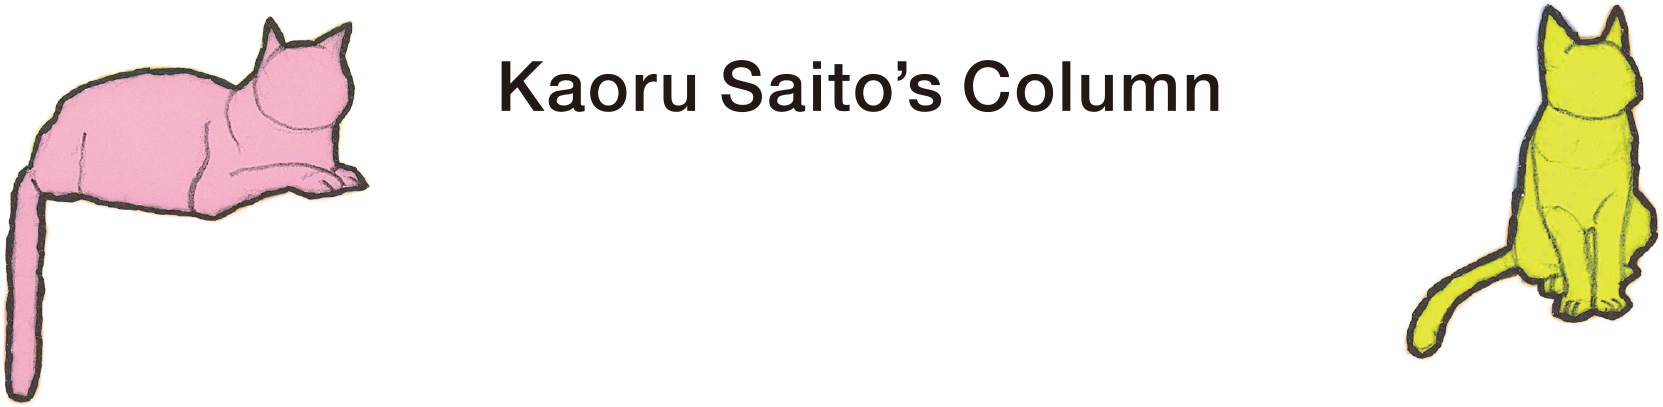 Kaoru Saito's Column